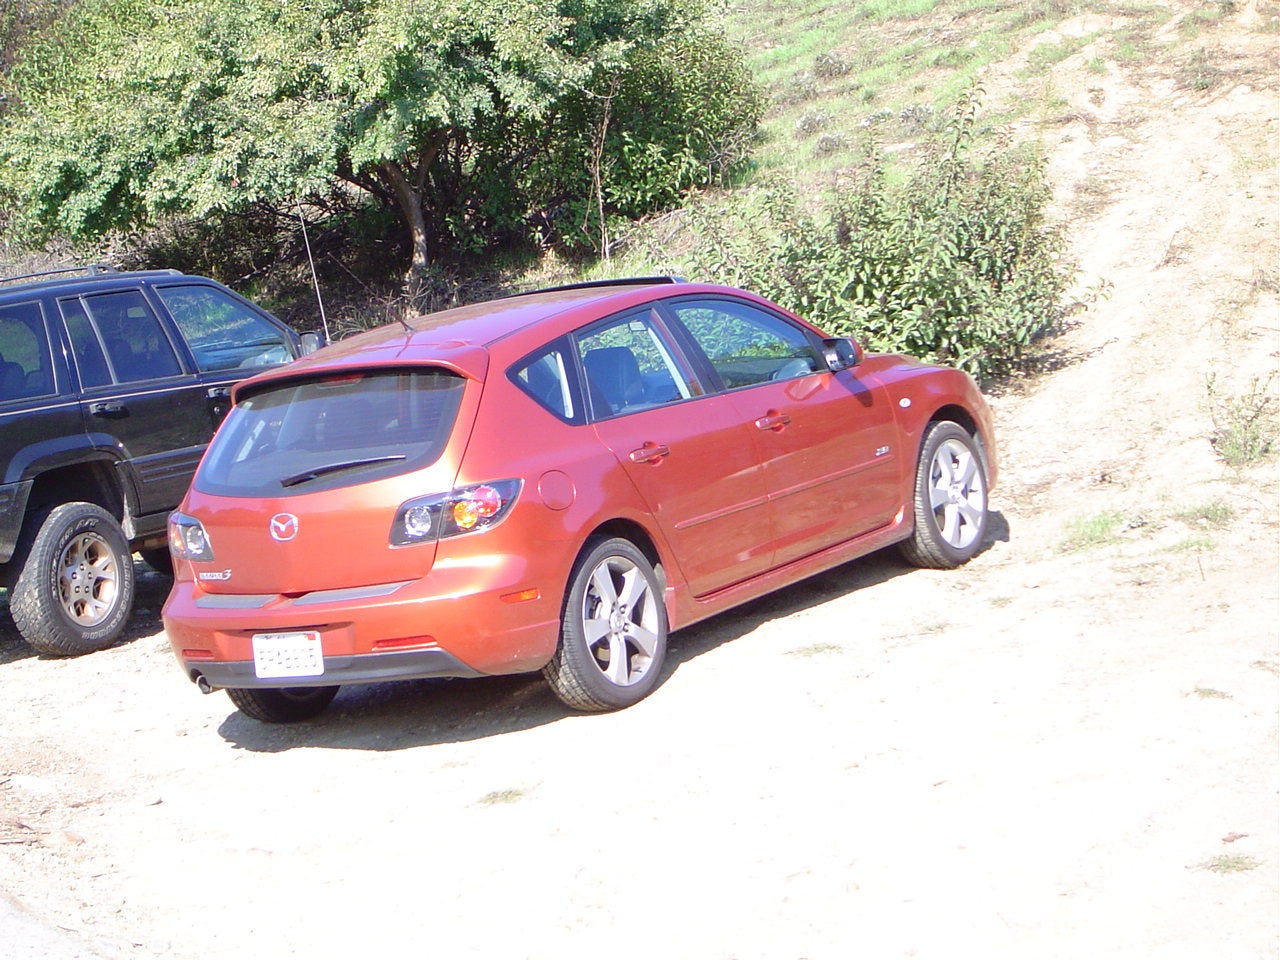 2005 Mazda MAZDA3 - Exterior Pictures - CarGurus